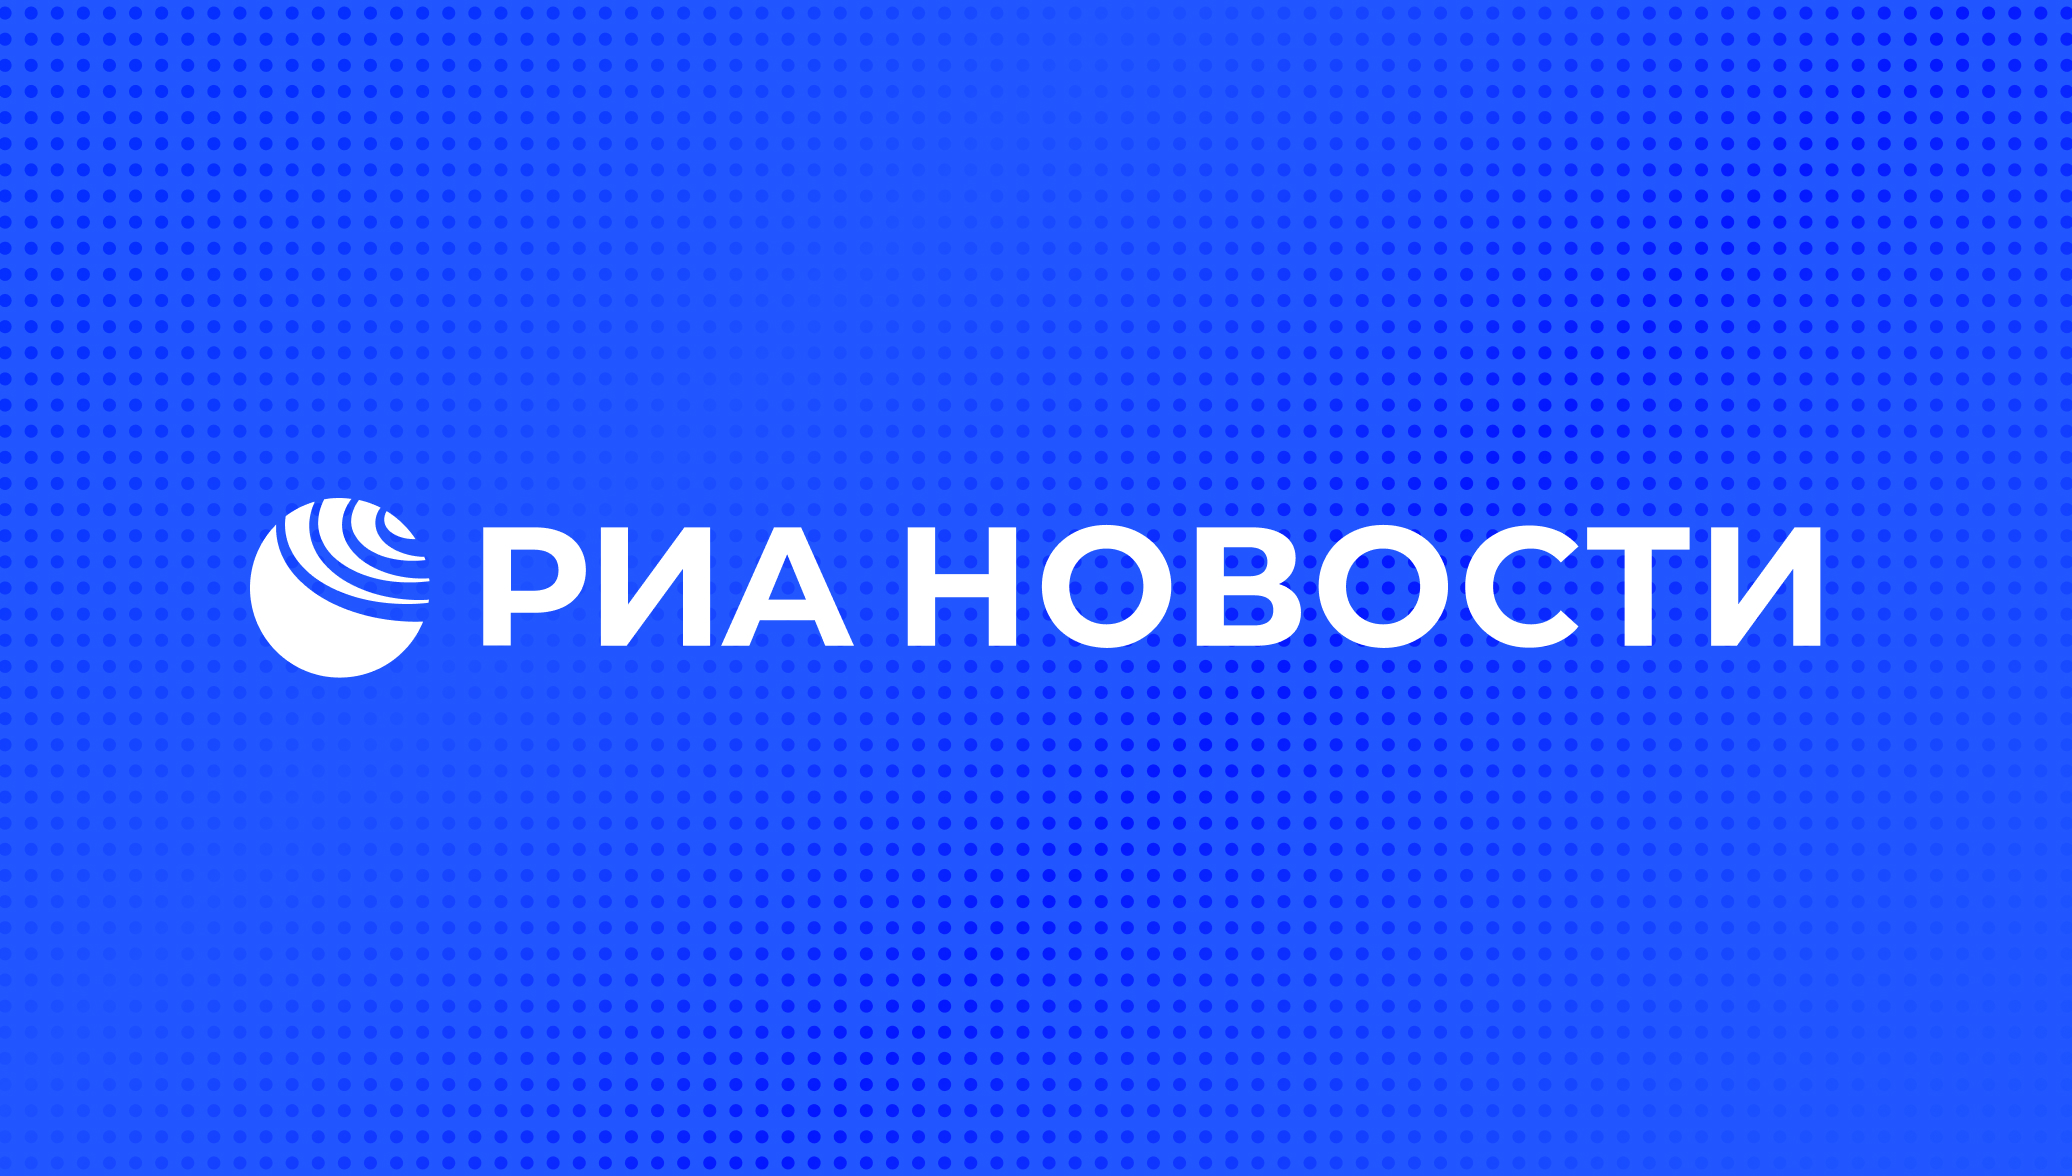 РИА Новости - события в Москве, России и мире: темы дня, фото, видео, инфографика, радио